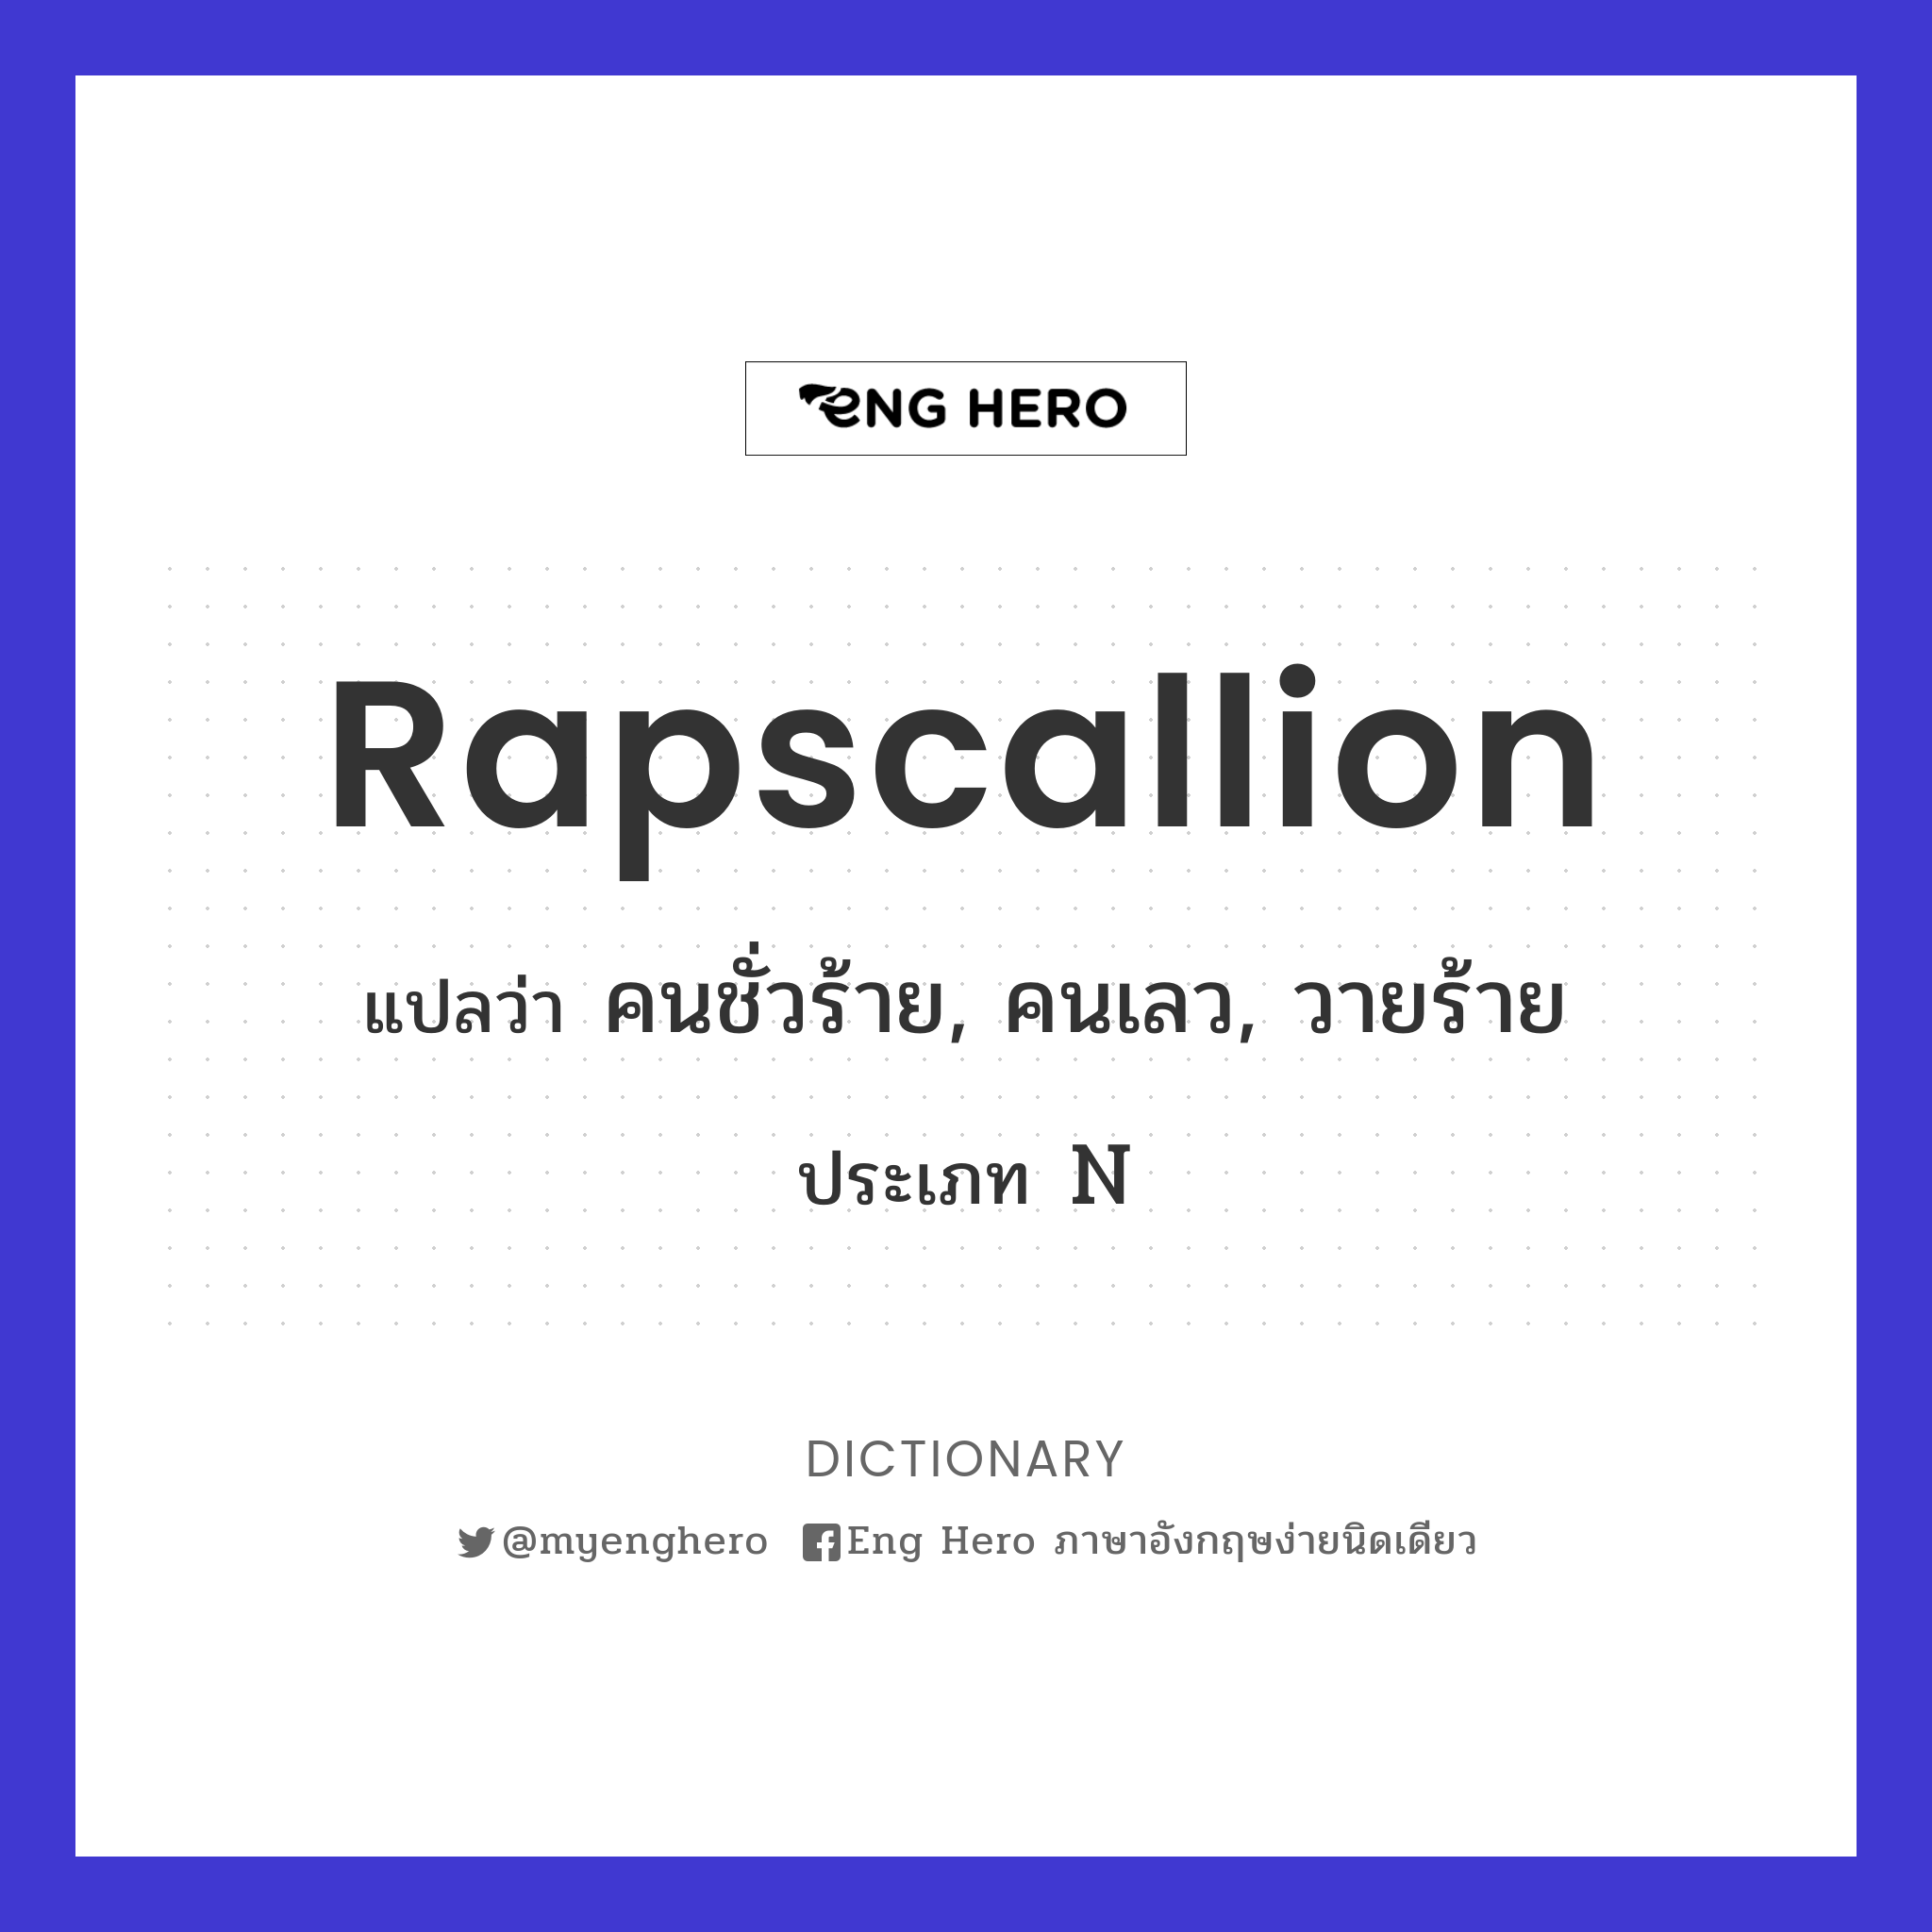 rapscallion